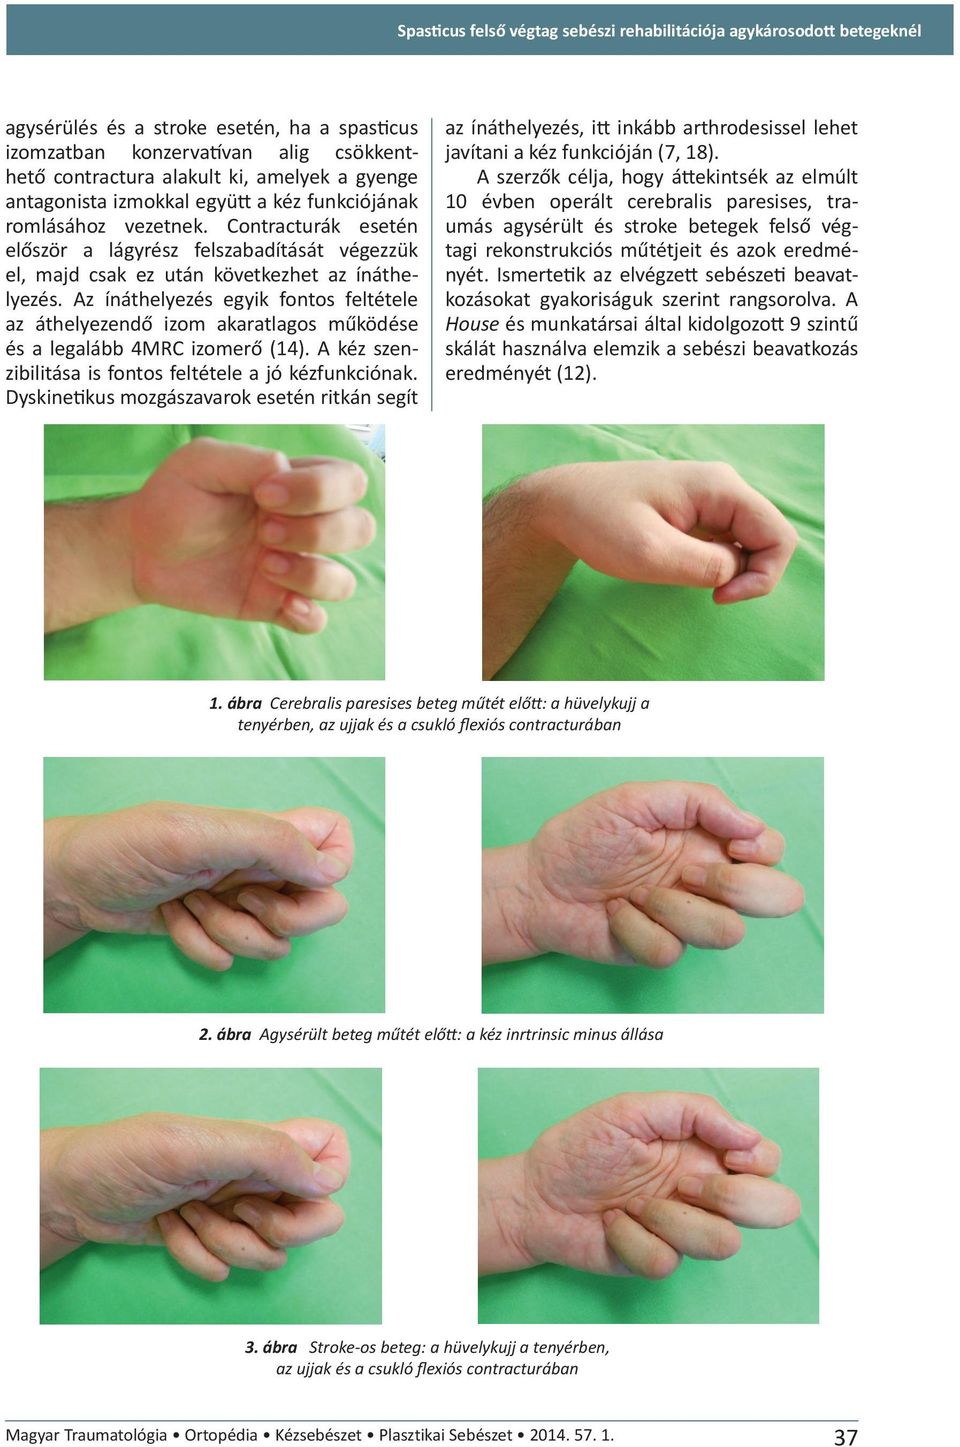 Az ínáthelyezés egyik fontos feltétele az áthelyezendő izom akaratlagos működése és a legalább 4MRC izomerő (14). A kéz szenzibilitása is fontos feltétele a jó kézfunkciónak.